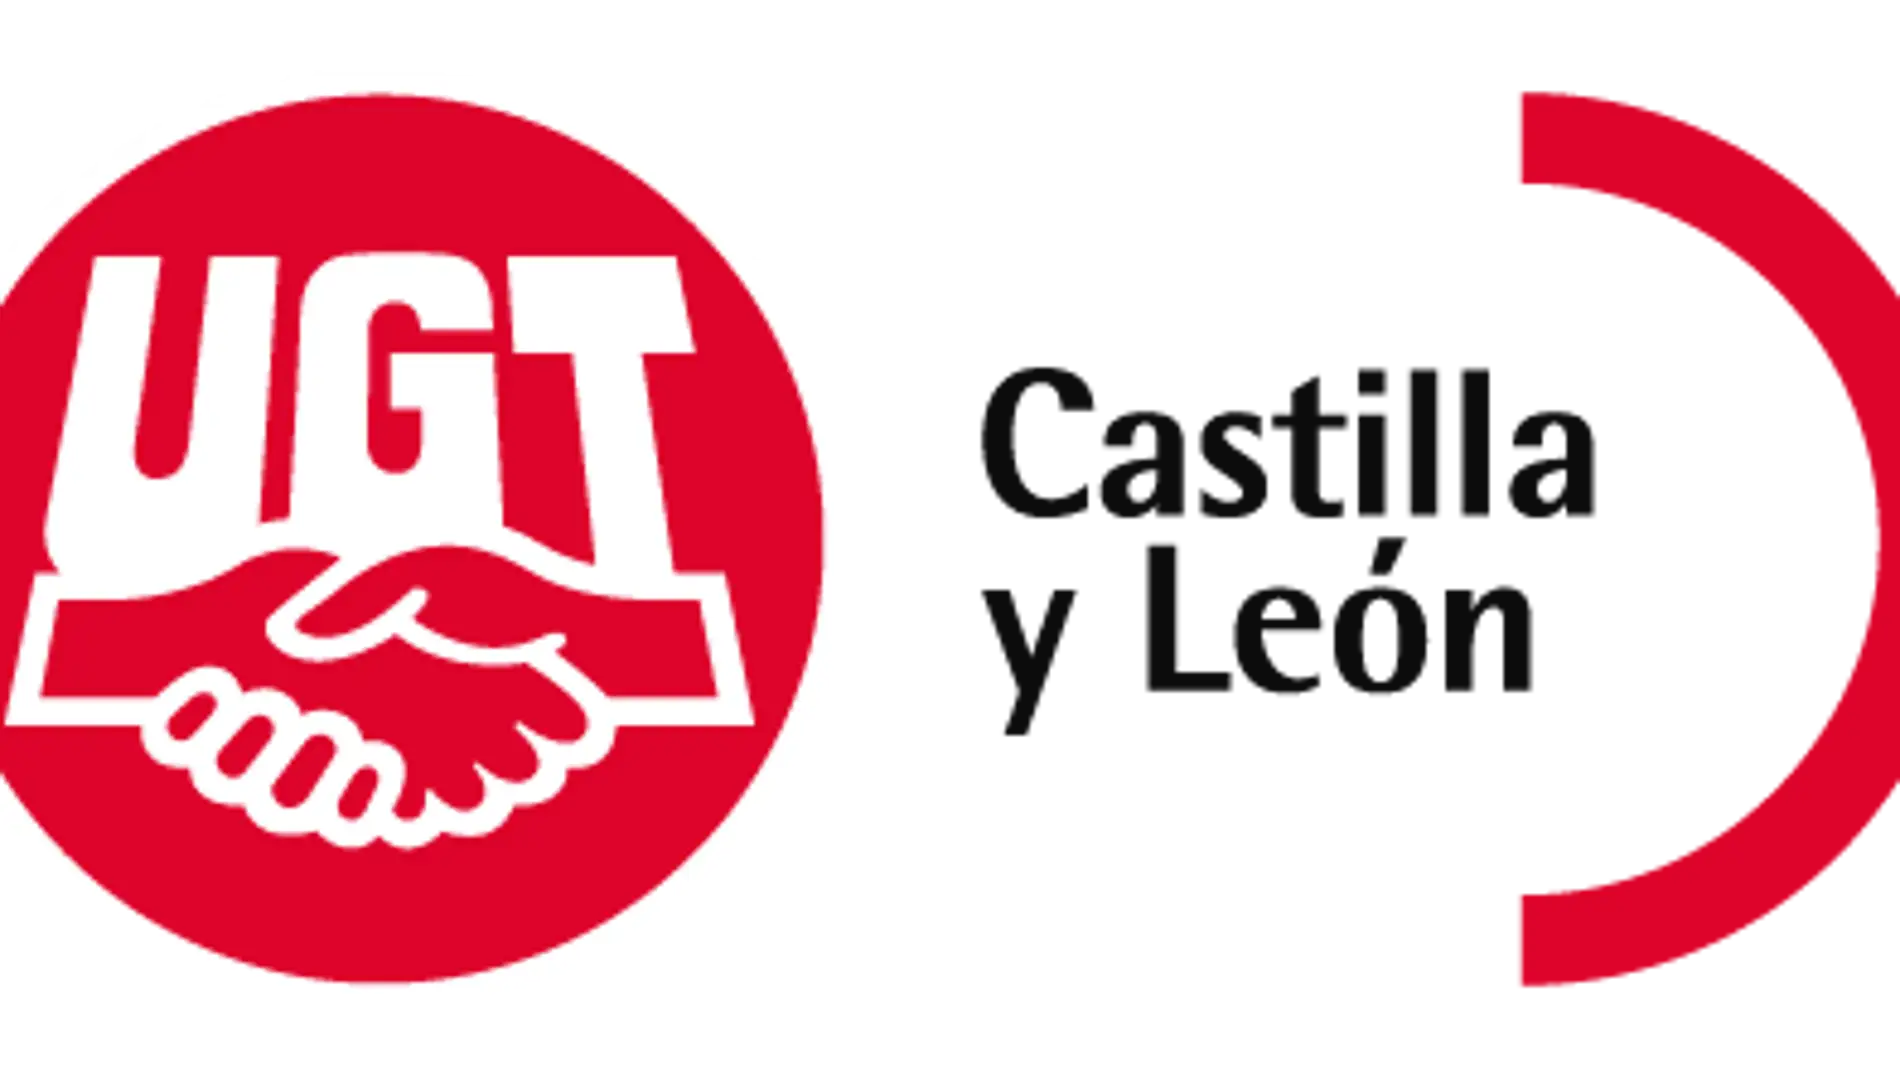 UGT lamenta "profundamente" los dos últimos accidentes de trabajo mortales ocurridos en Palencia